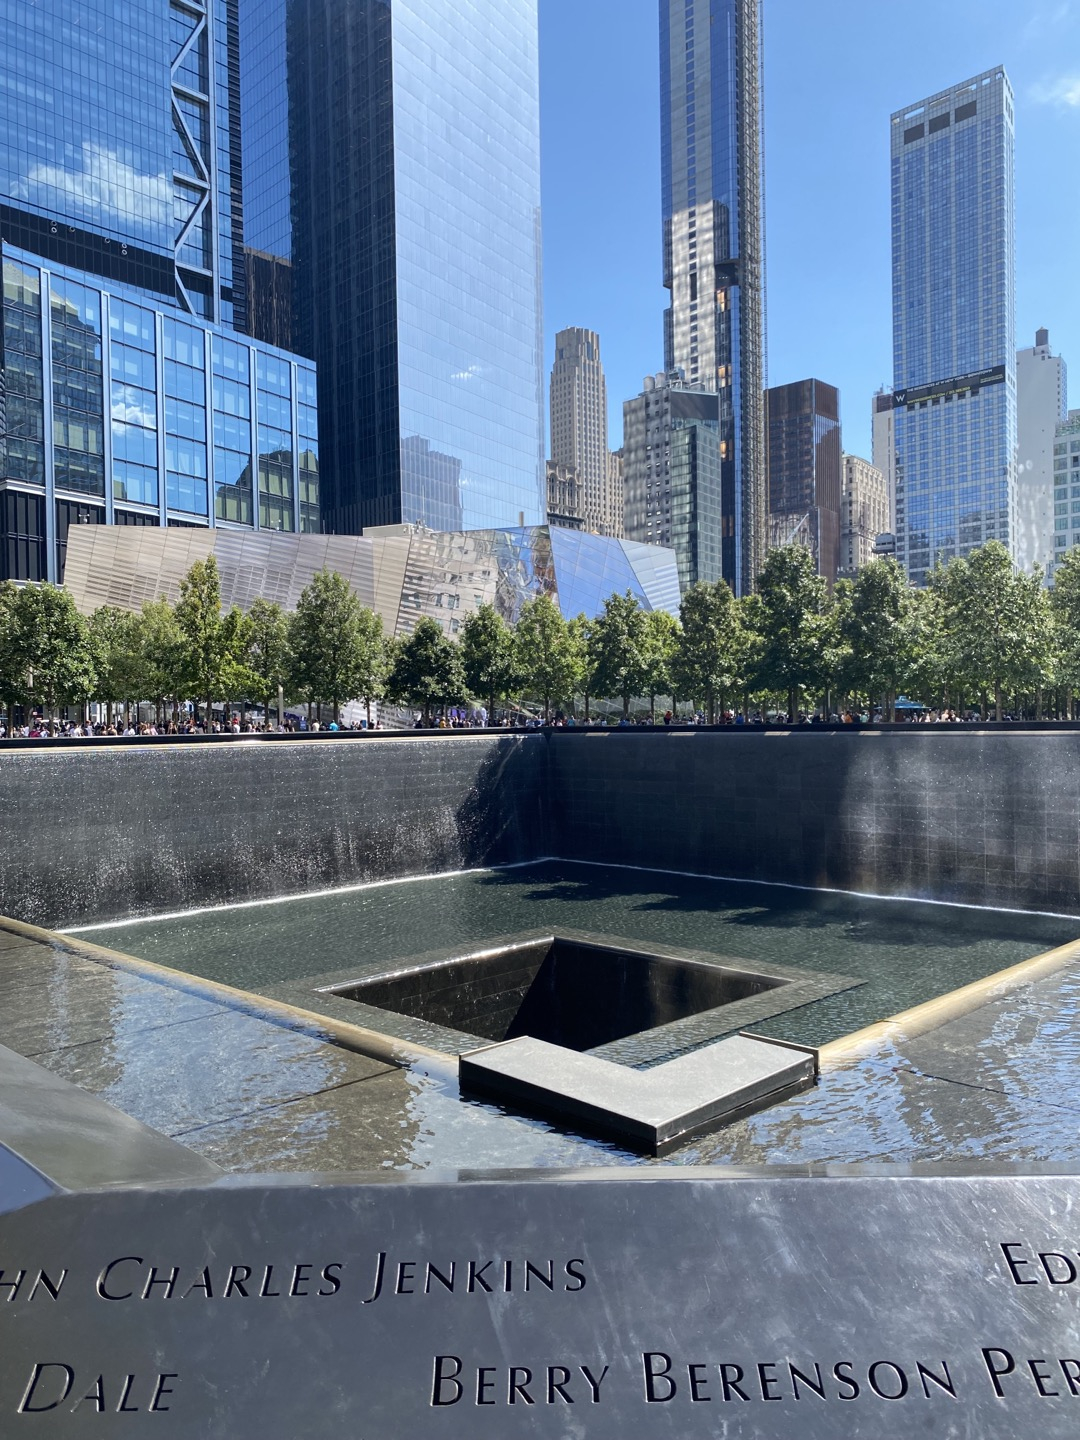 911테러 희생자들을 위한 추모 기념비.